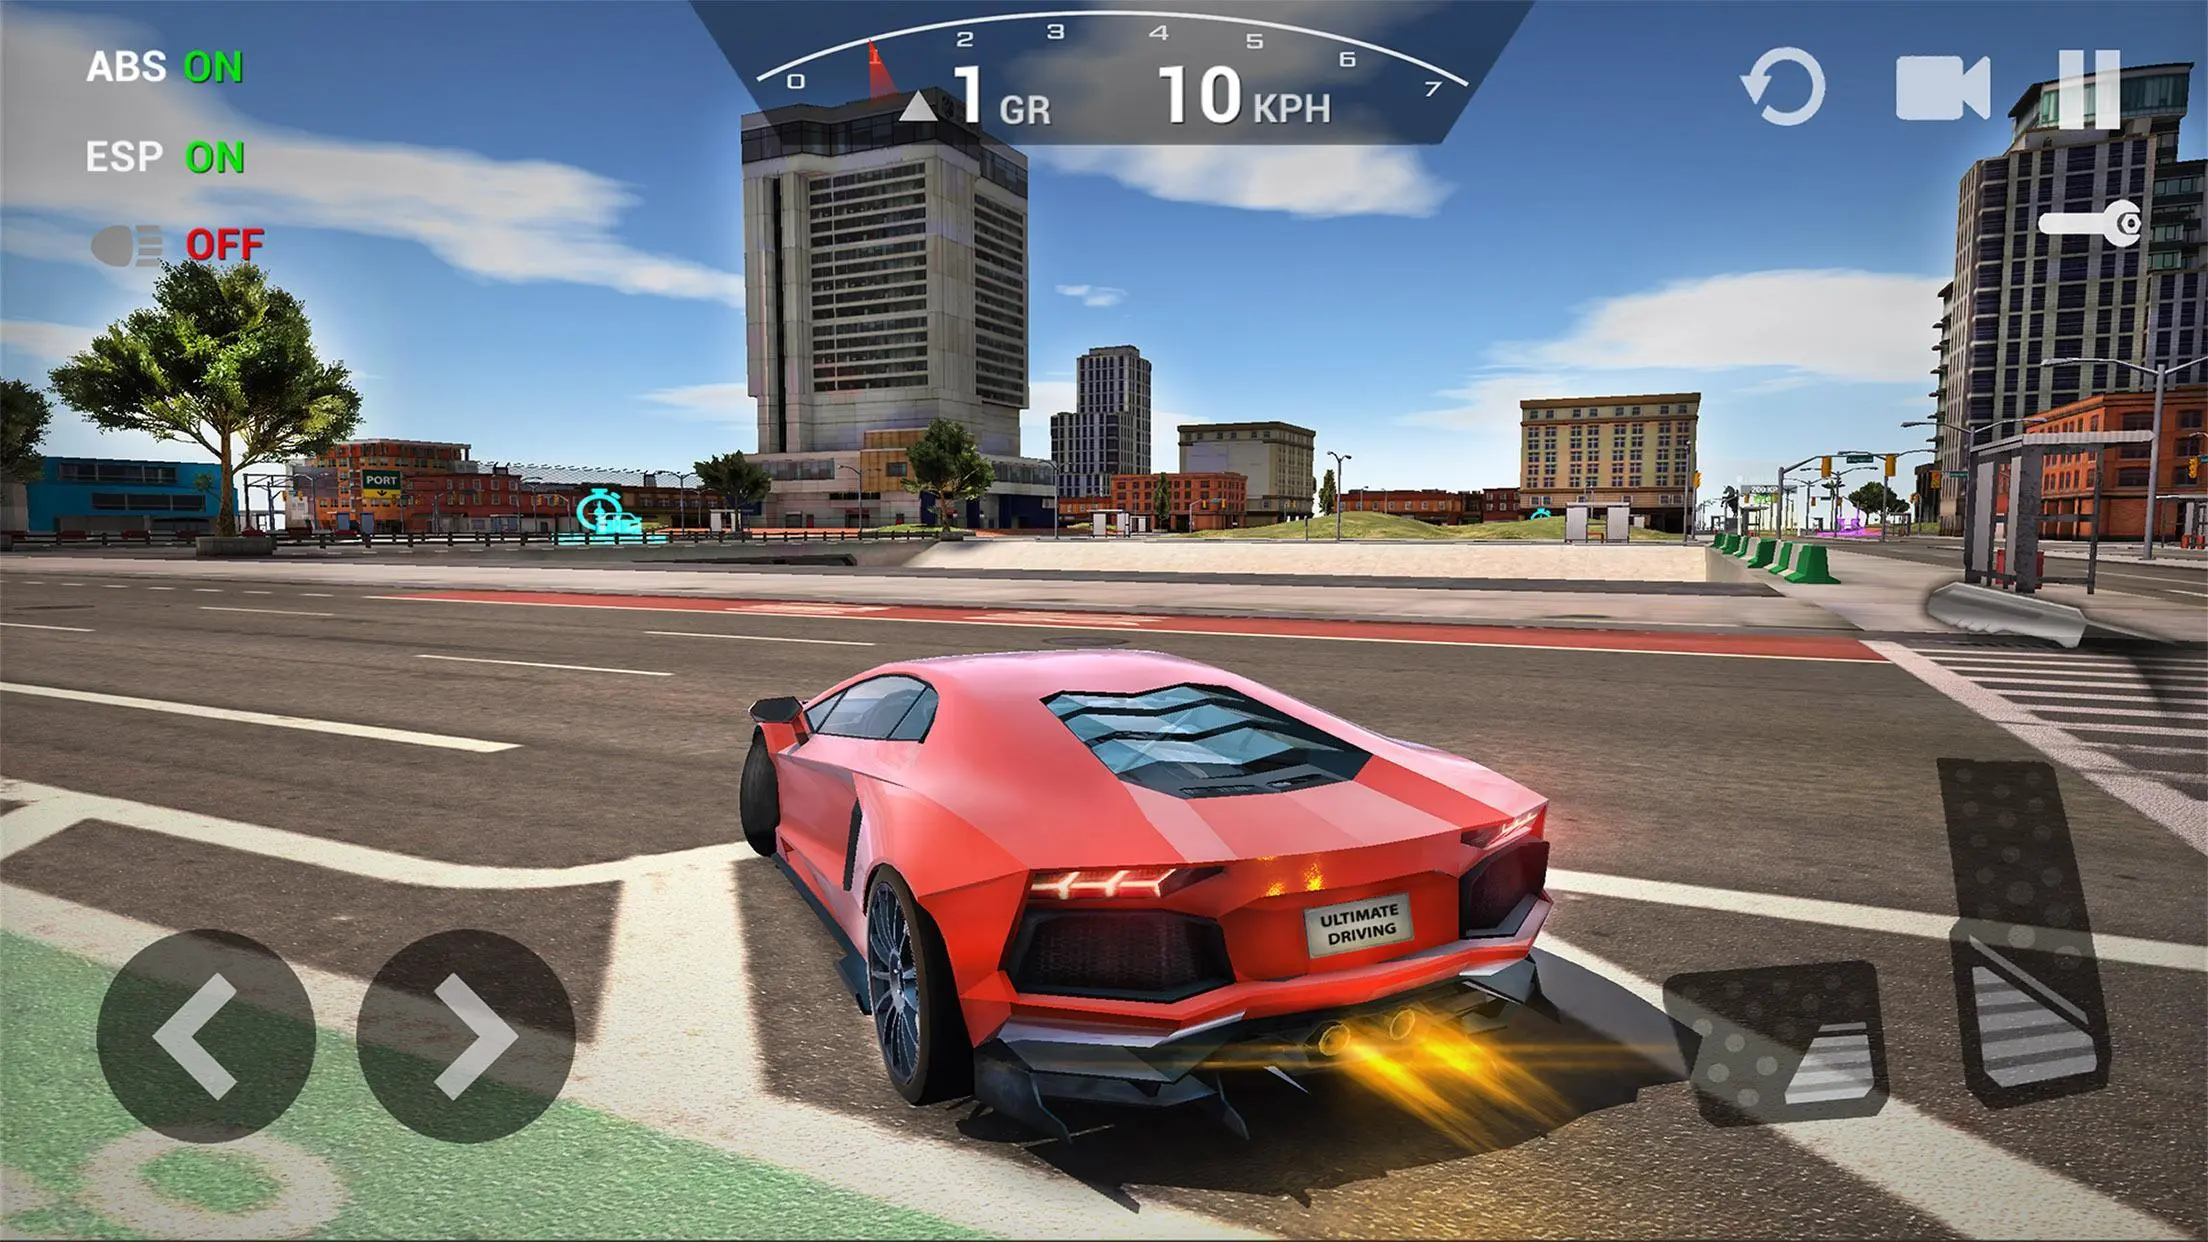 Descargar Ultimate Car Driving Simulator en PC | GameLoop Oficial